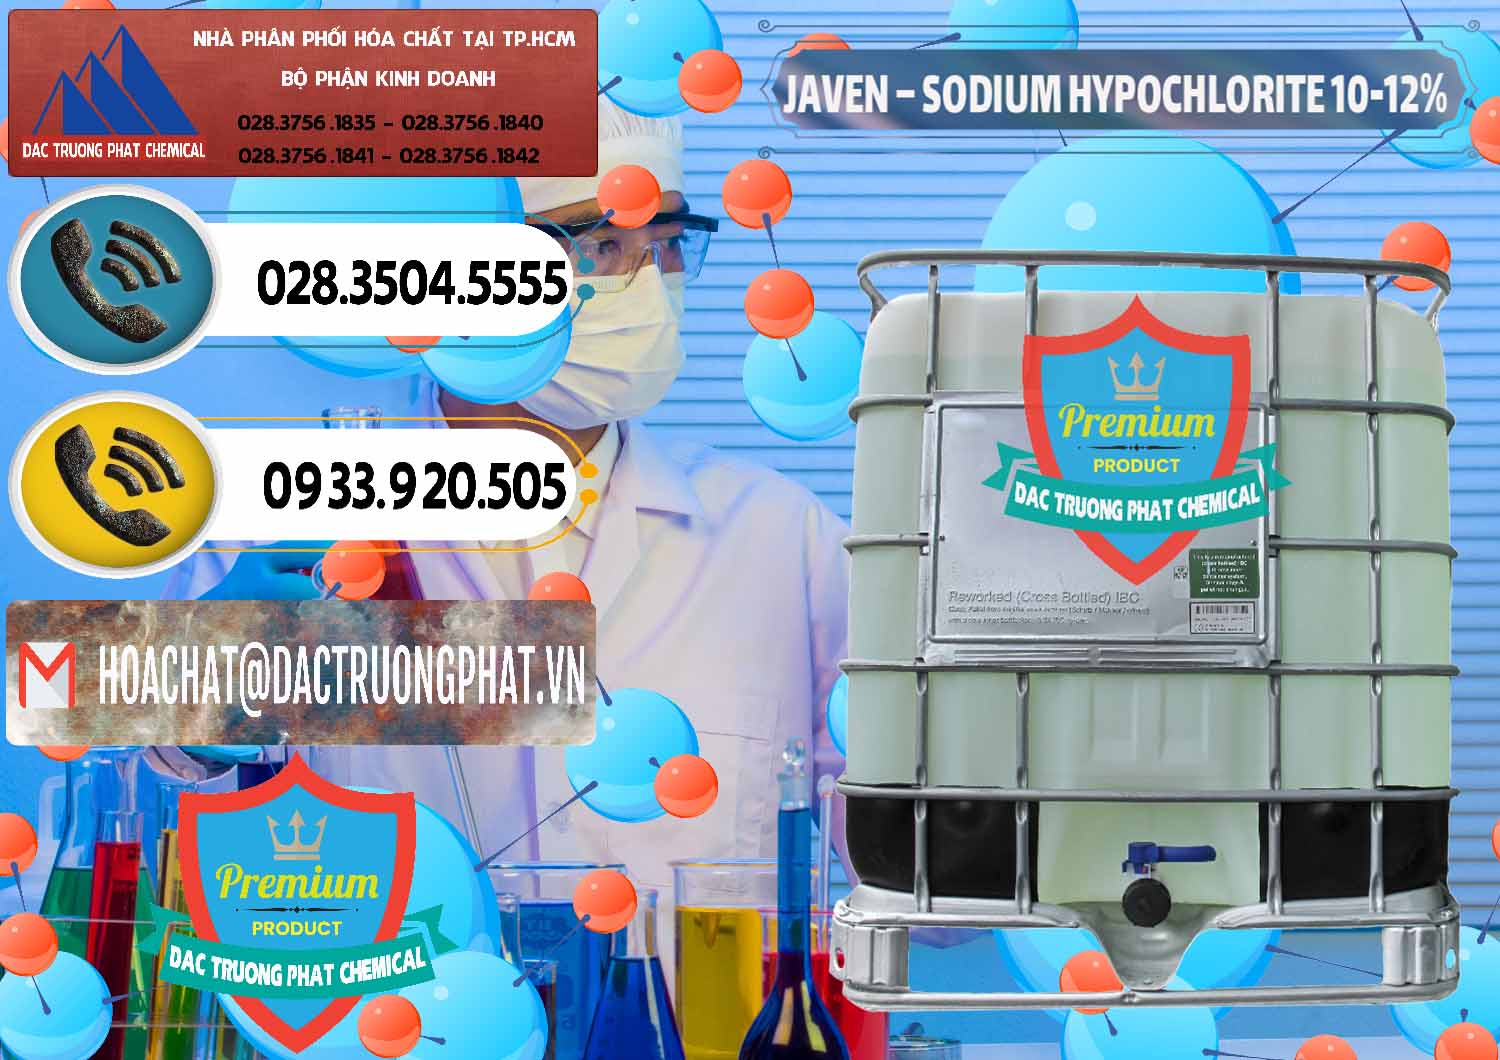 Cty cung cấp - phân phối Javen - Sodium Hypochlorite 10-12% Việt Nam - 0188 - Nơi chuyên kinh doanh và cung cấp hóa chất tại TP.HCM - hoachatdetnhuom.vn